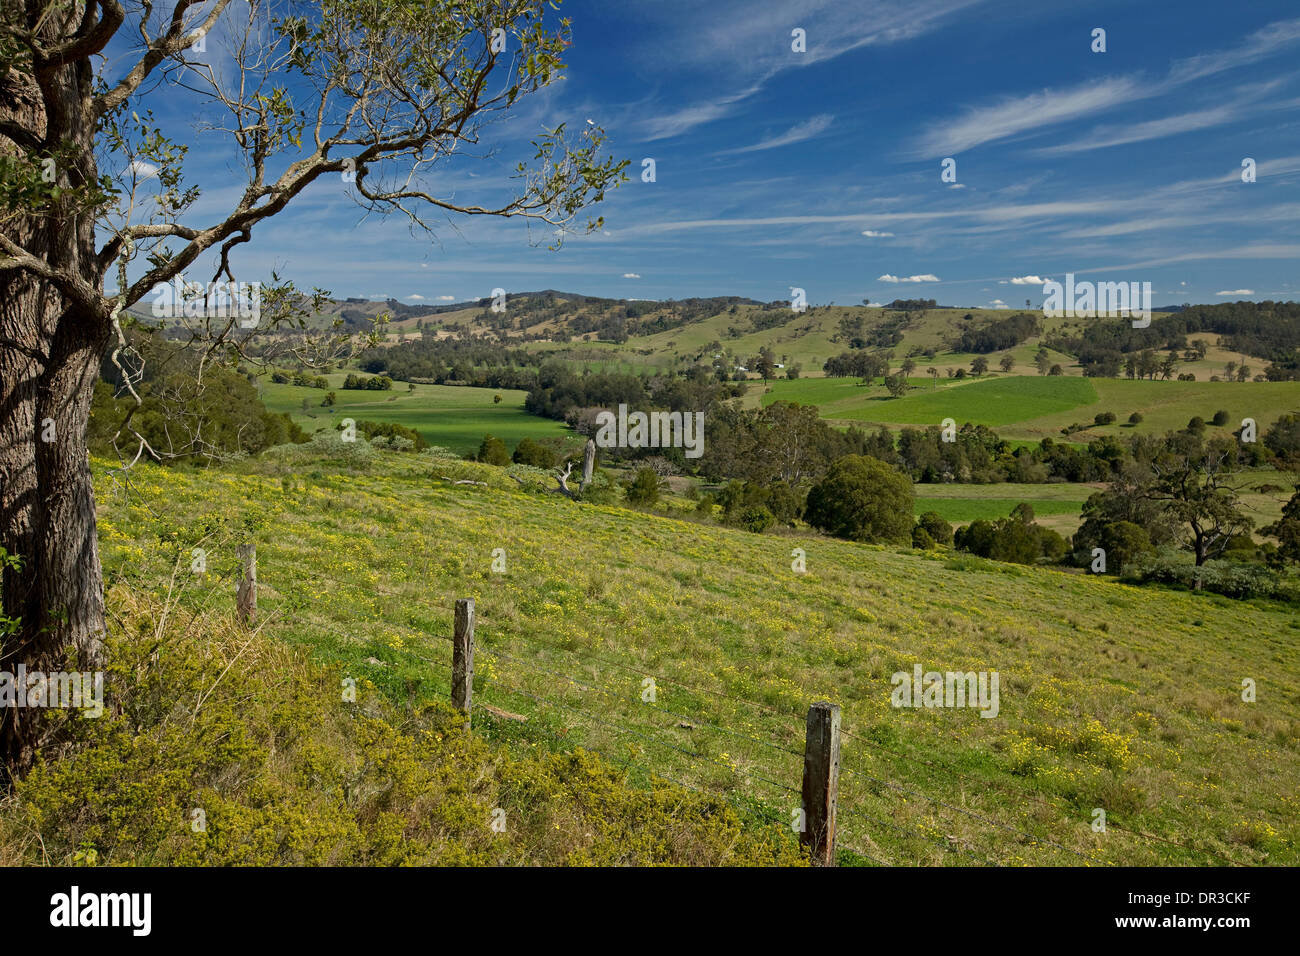 Rural pittoresque paysage de collines basses et fertiles de la vallée verte sous ciel bleu près de Dungog dans NSW Australie Banque D'Images